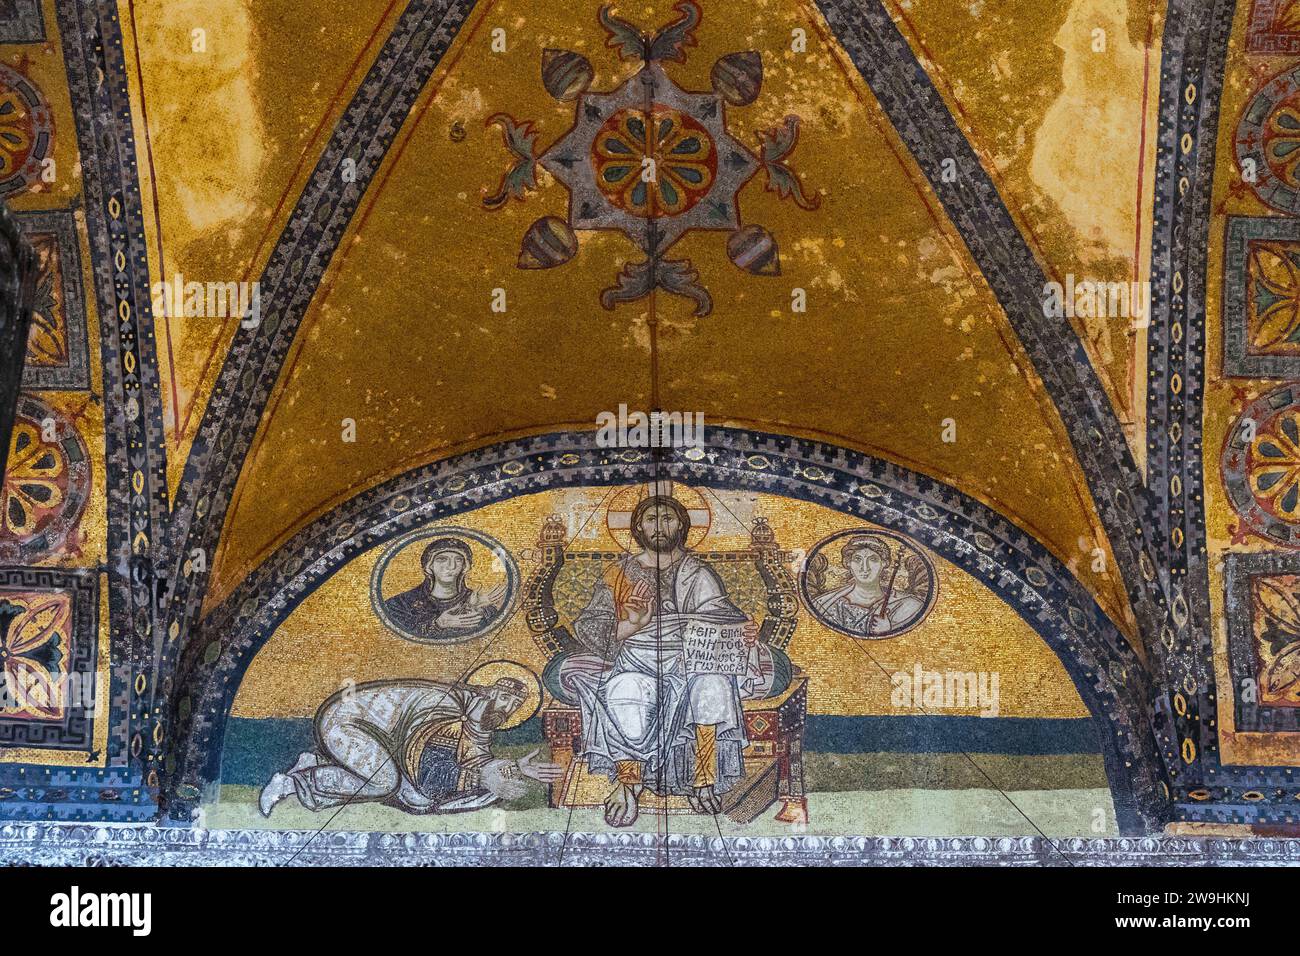 Mosaïque de l'empereur Léon VI (9e siècle) dans la mosquée Sainte-Sophie, ancienne cathédrale et icône culturelle de la civilisation byzantine et orthodoxe orientale Banque D'Images